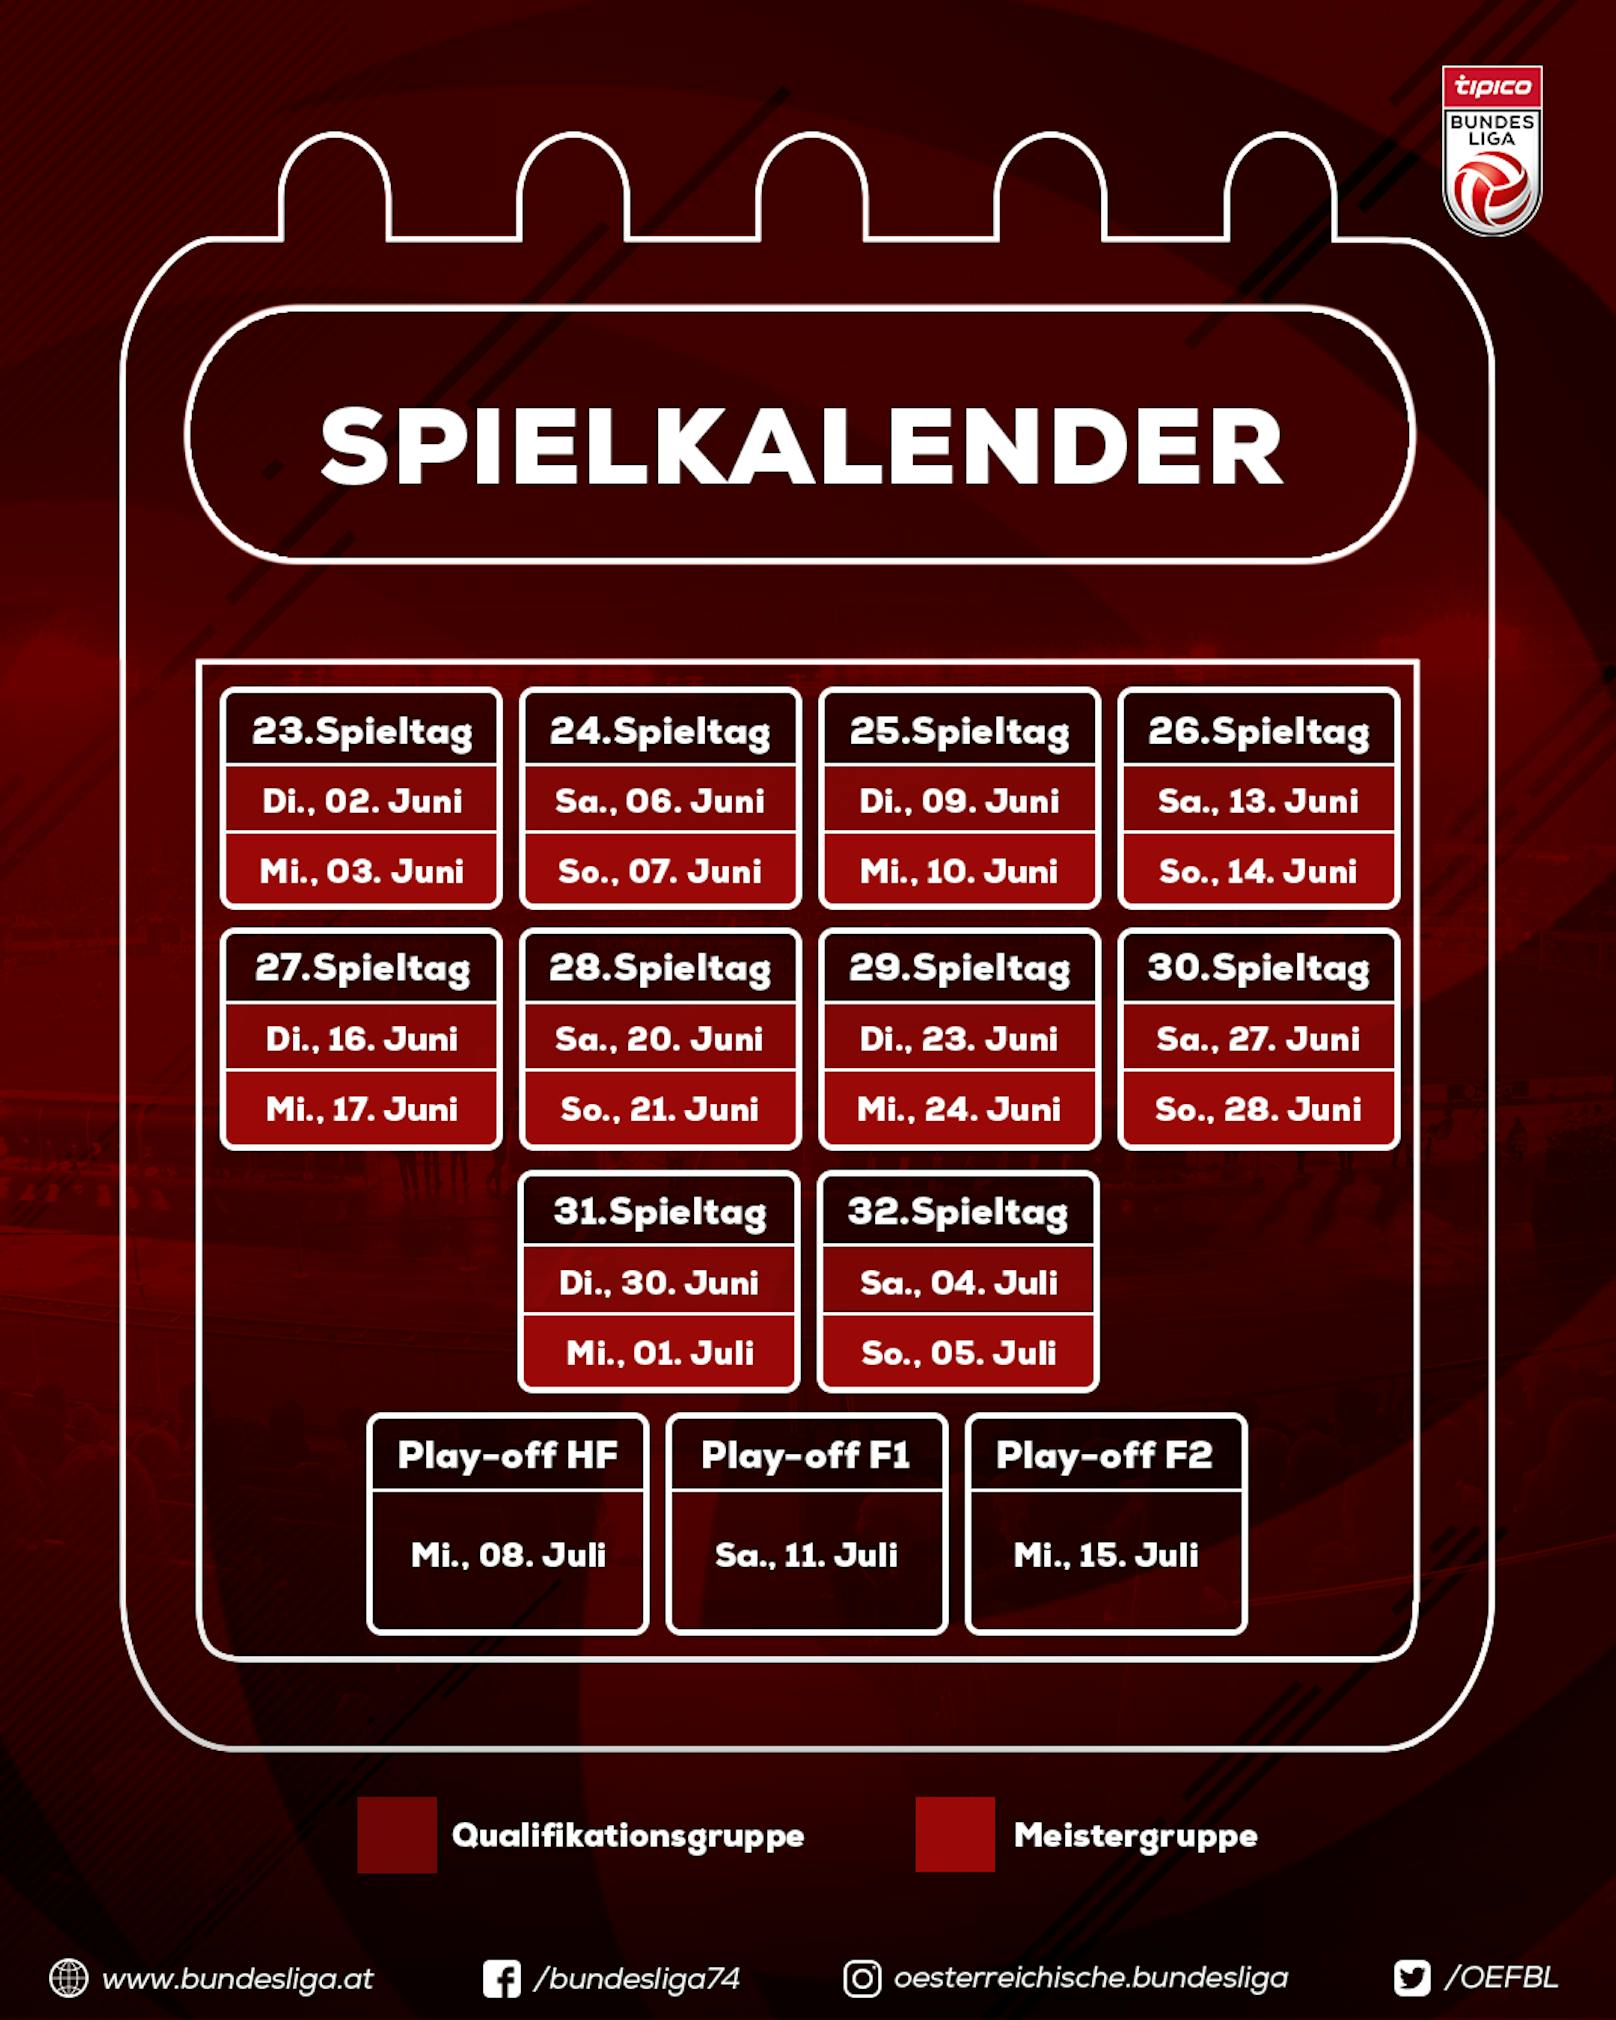 Der Bundesliga-Spielkalender